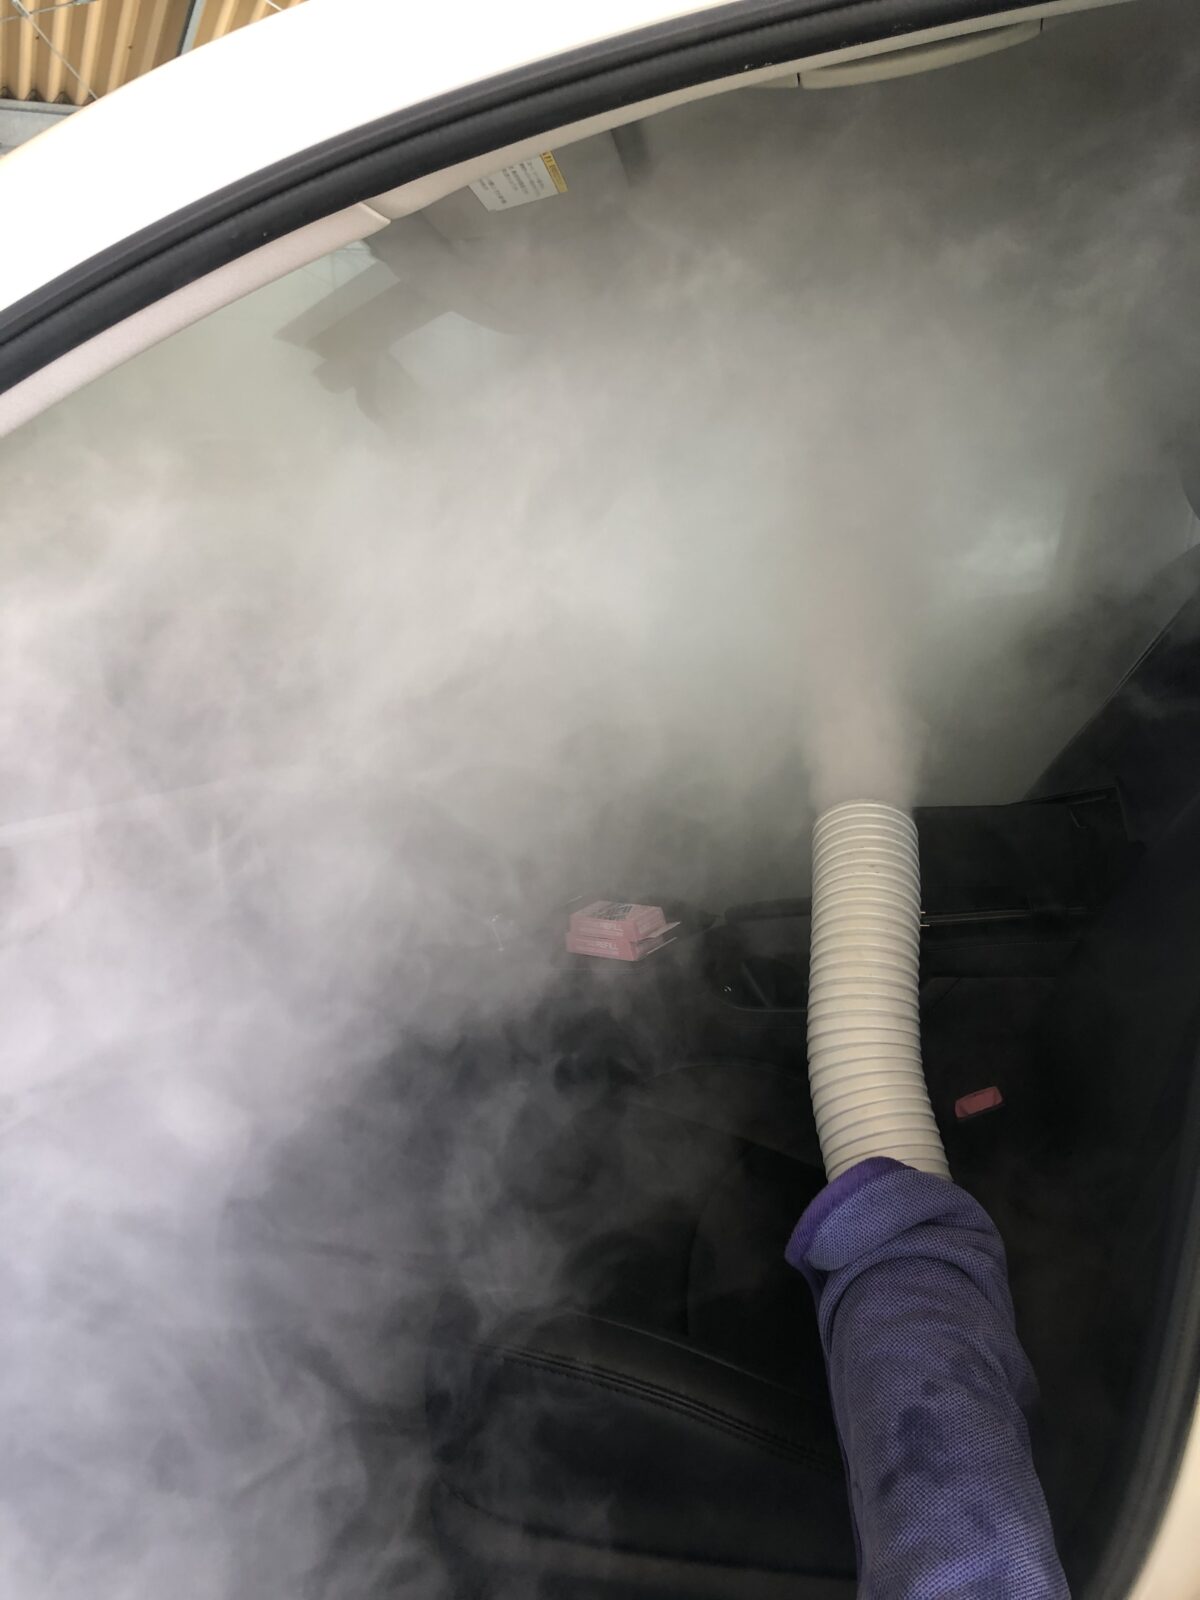 レクサス LEXUS 福岡 久留米 熊本 車エアコン カビ 臭い 匂い 当社はホームエアコンのようにカーエアコンを洗えます(^^) 全国にて施工対応の「愛車のエアコン掃除屋さん」です！！！ 料金は出張費込みの値段です。車内清掃 車内クリーニング スノーソックス